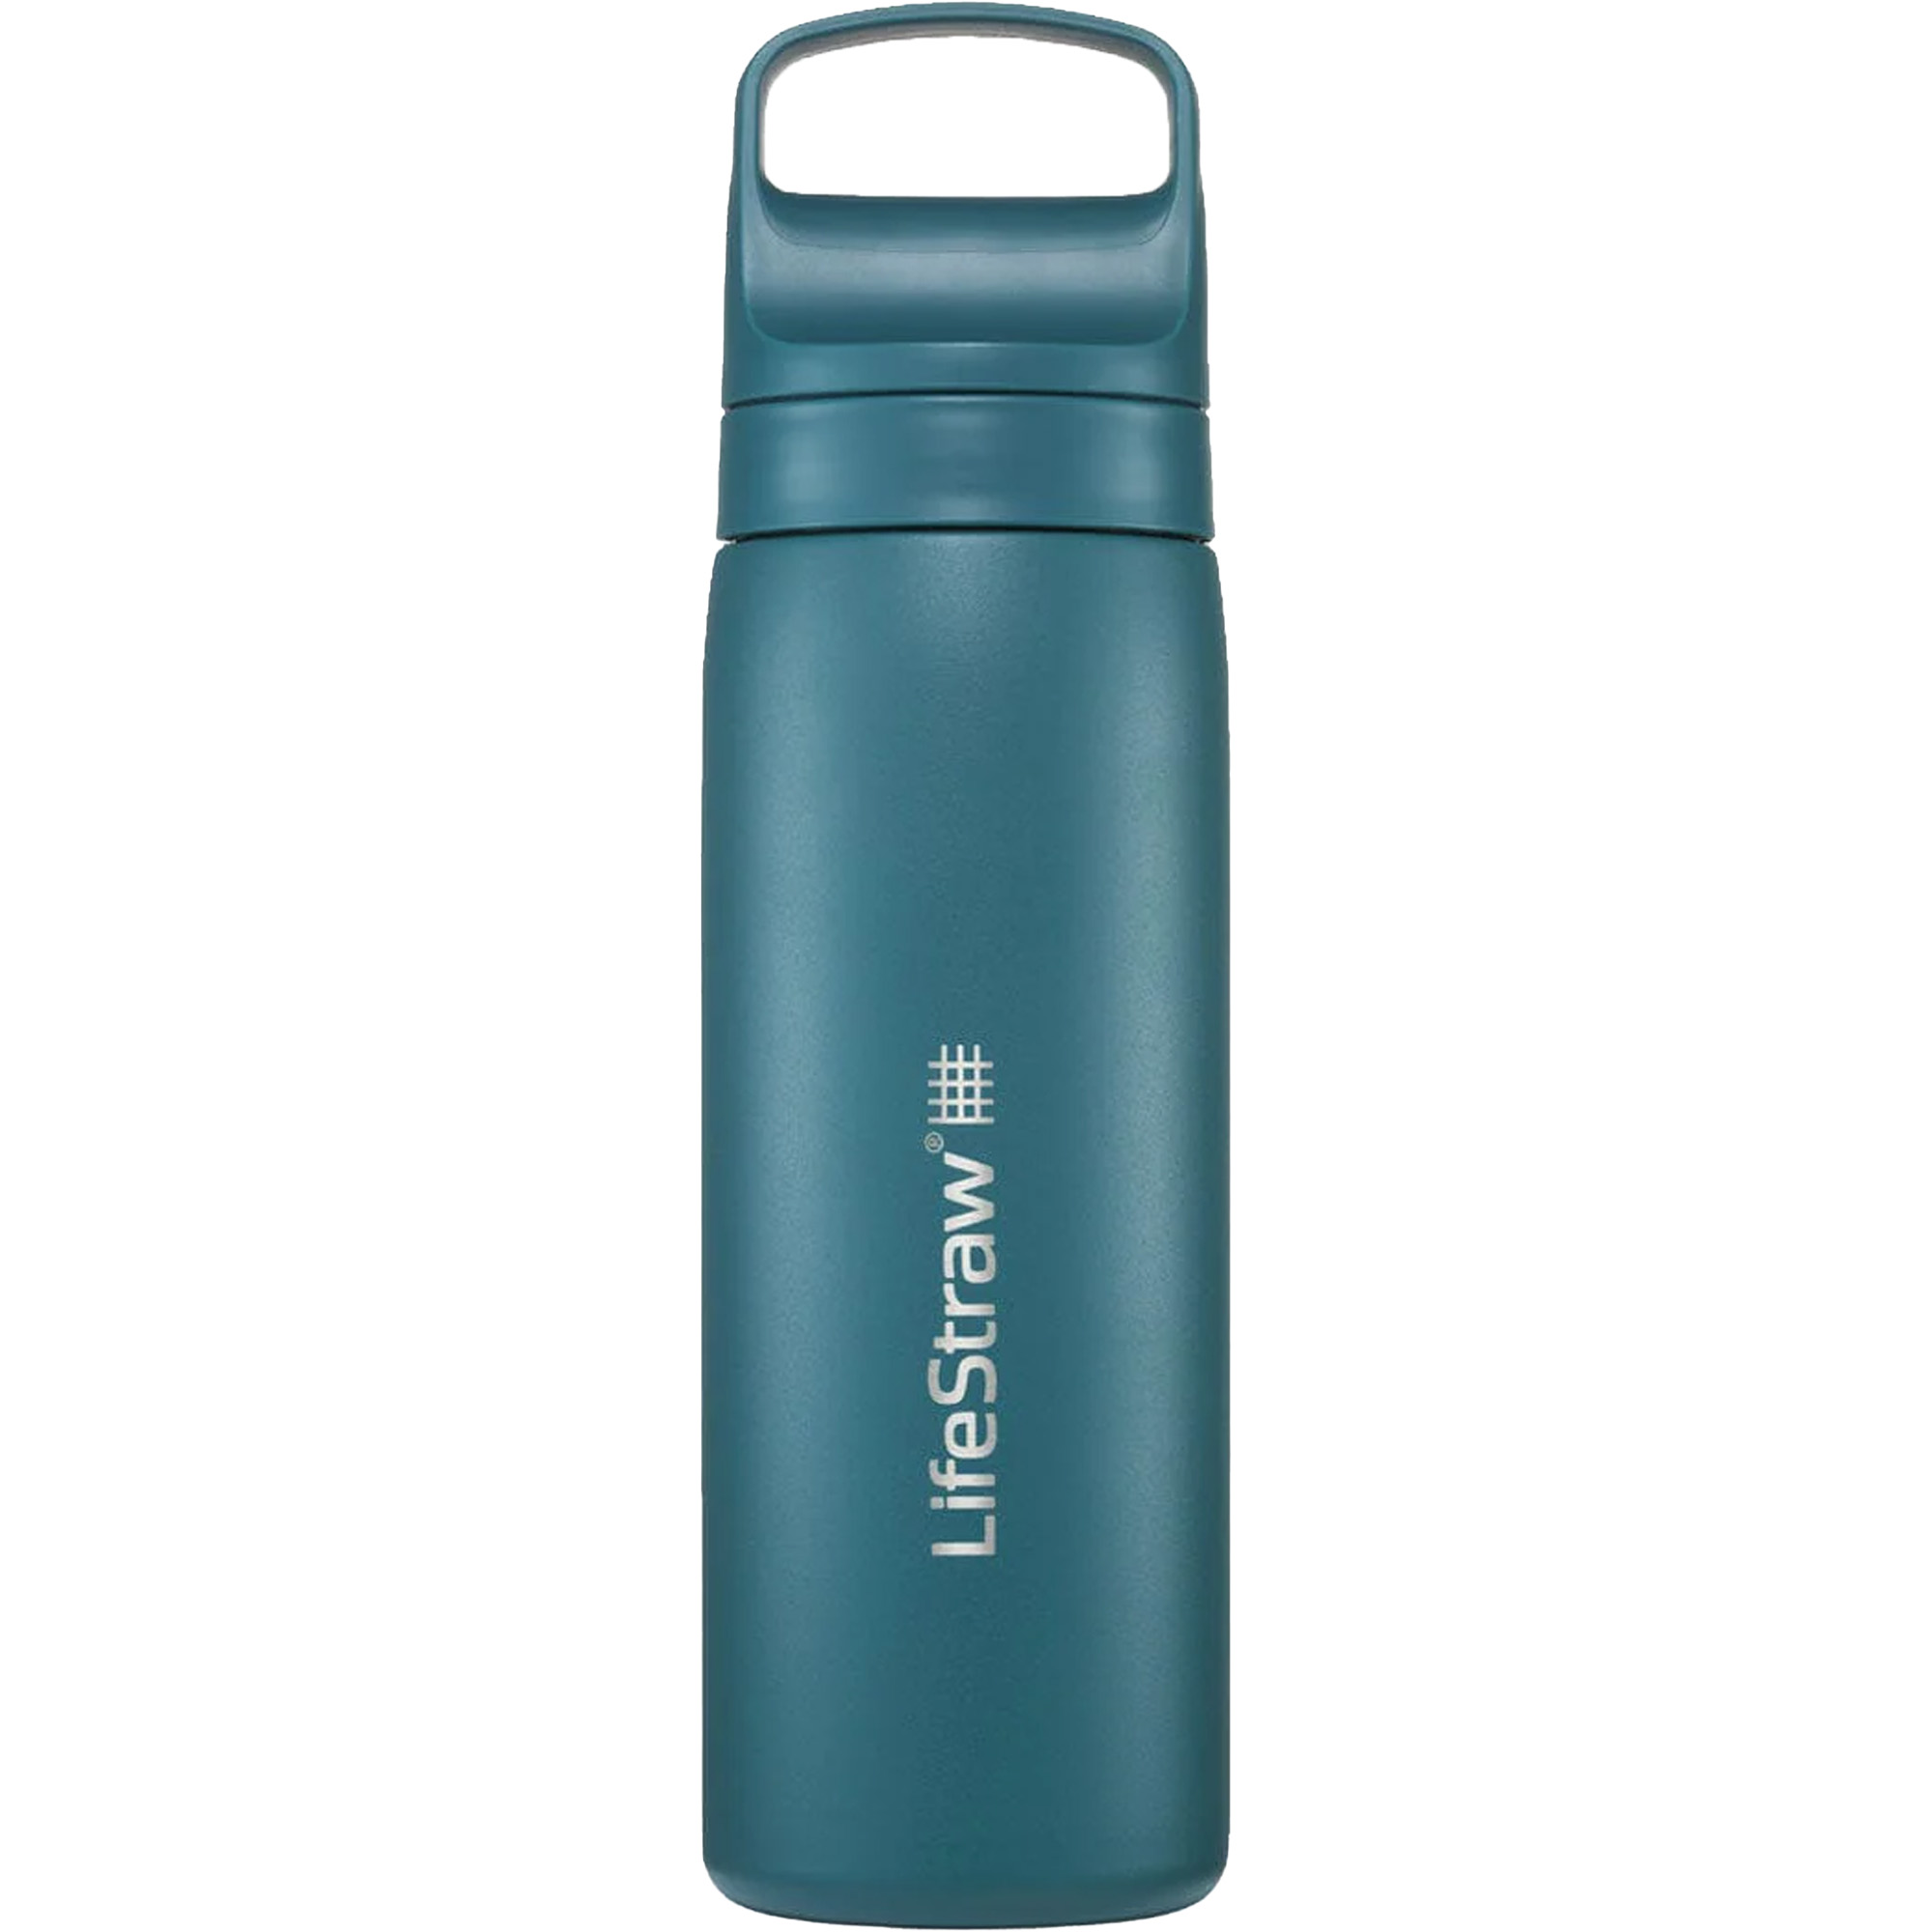 Lifestraw Go Stainless Steel 500ml Travel Water Filter Bottle